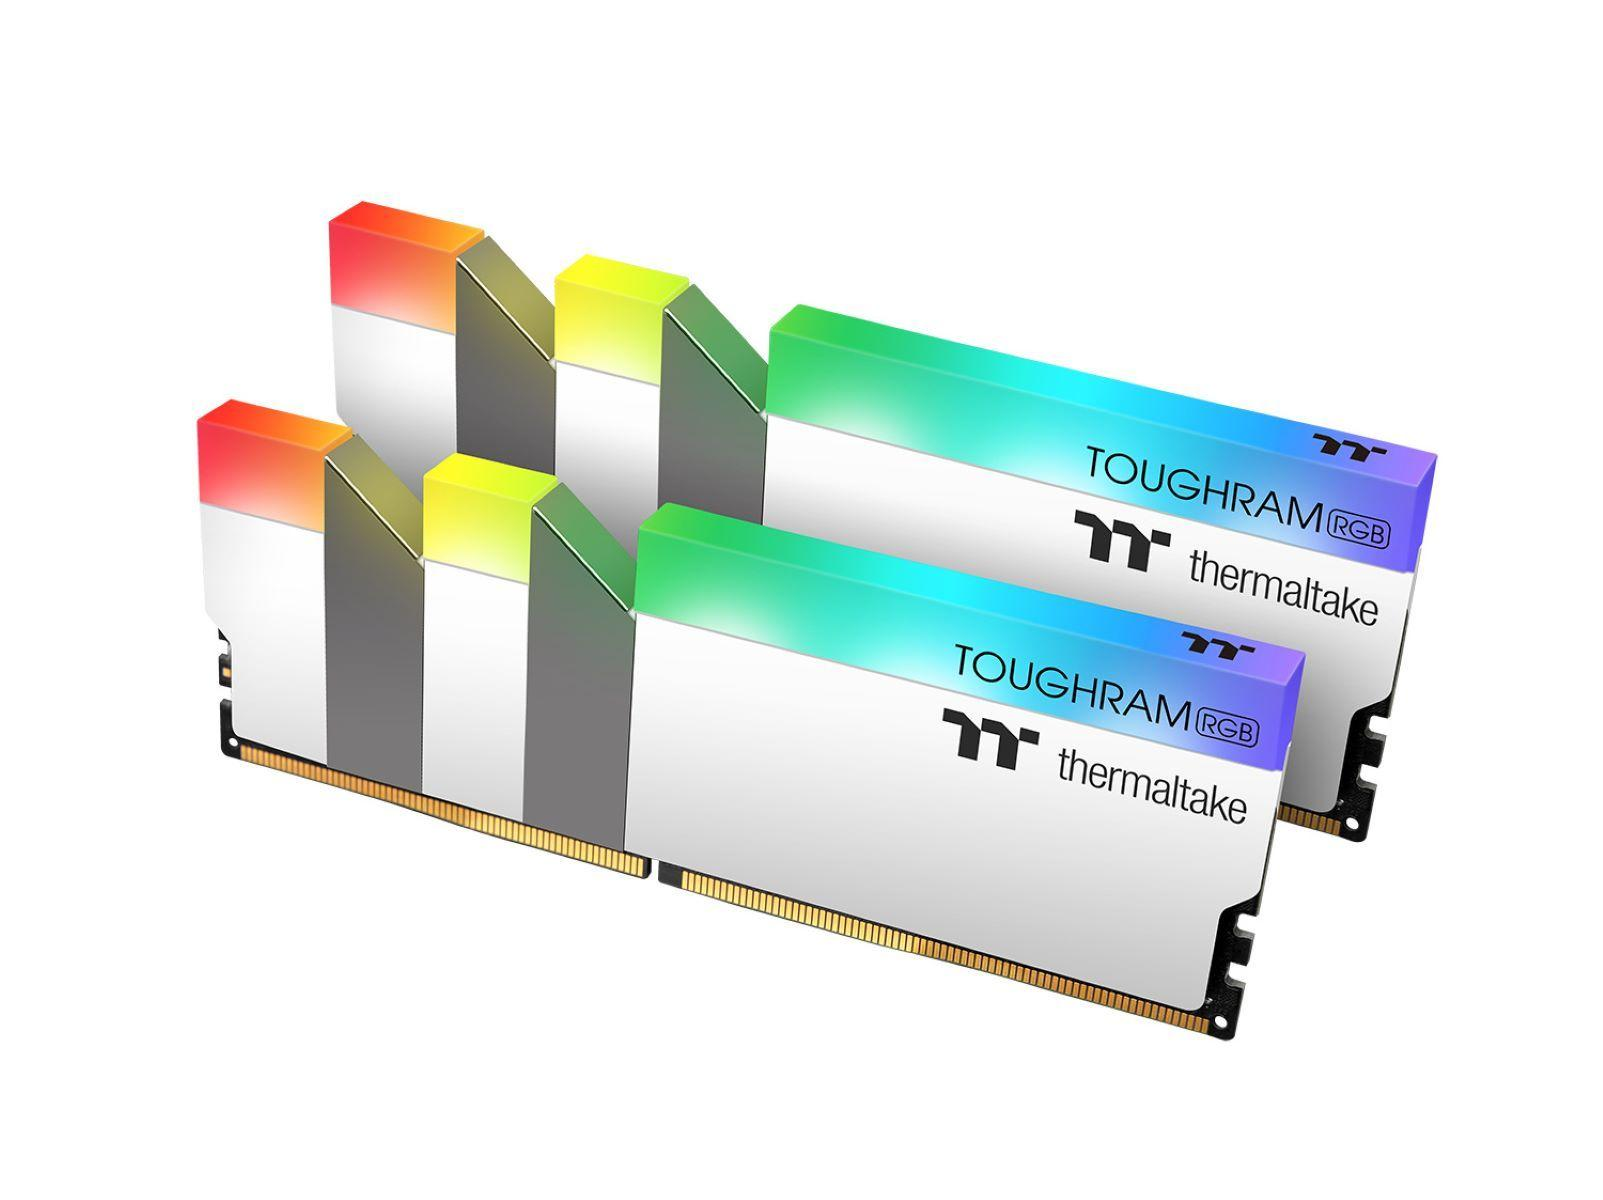 THERMALTAKE TOUGHRAM GB RGB 16 DDR4 WHITE Arbeitsspeicher